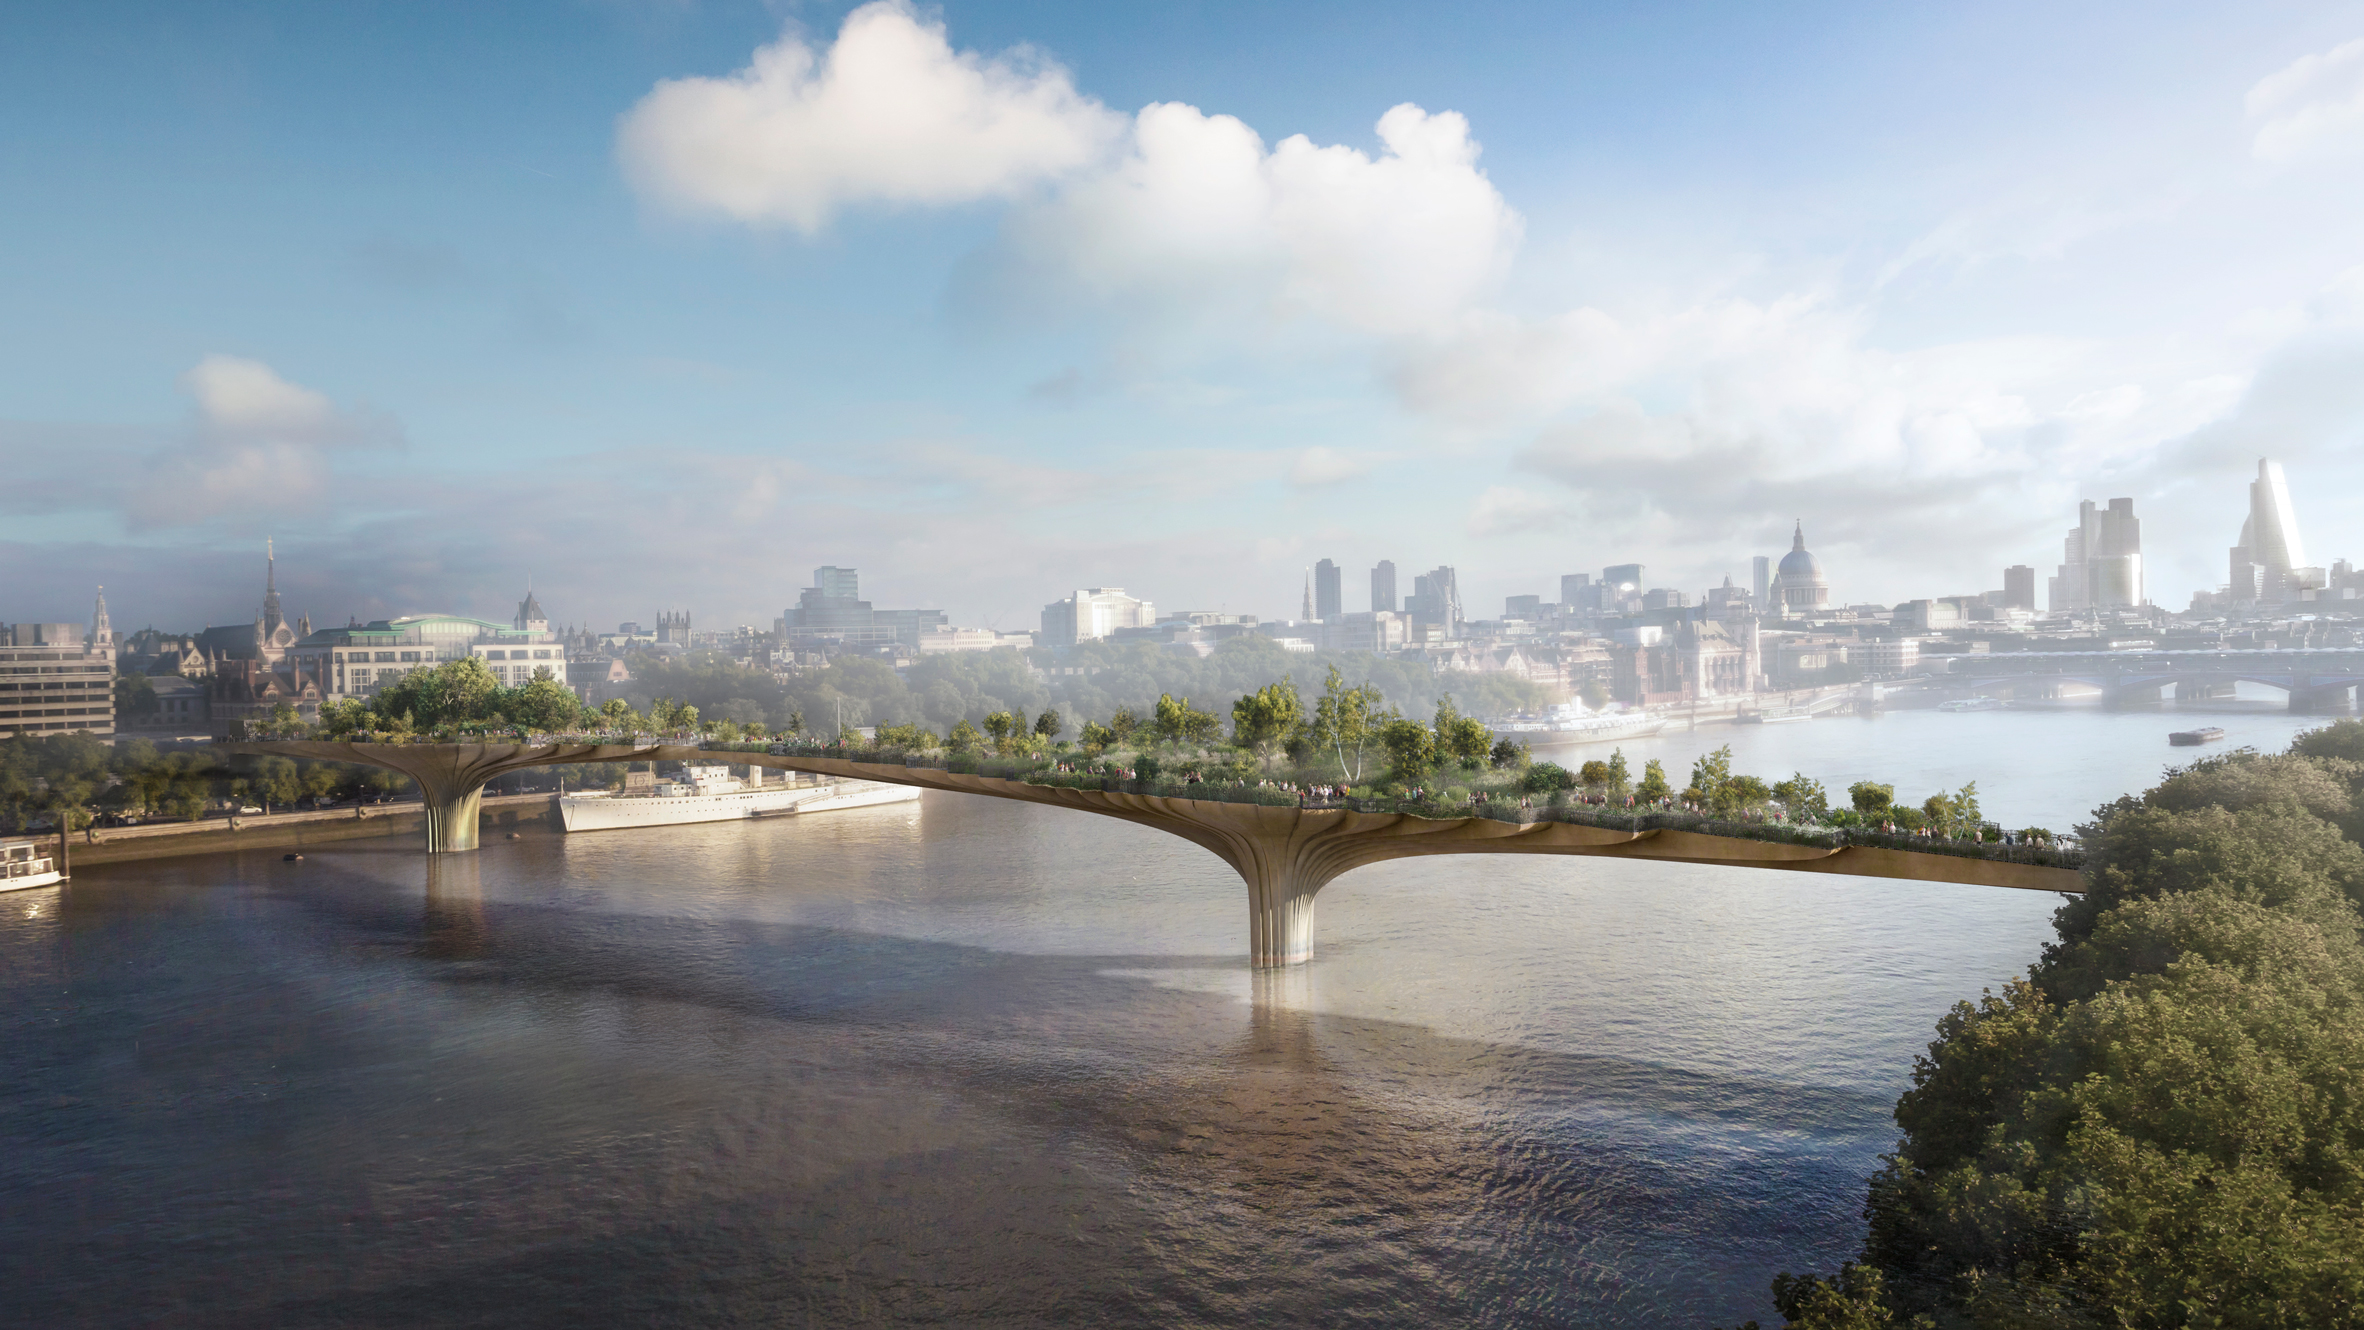 garden-bridge-london-infrastructure-bridges-architecture-uk_dezeen_hero.jpg